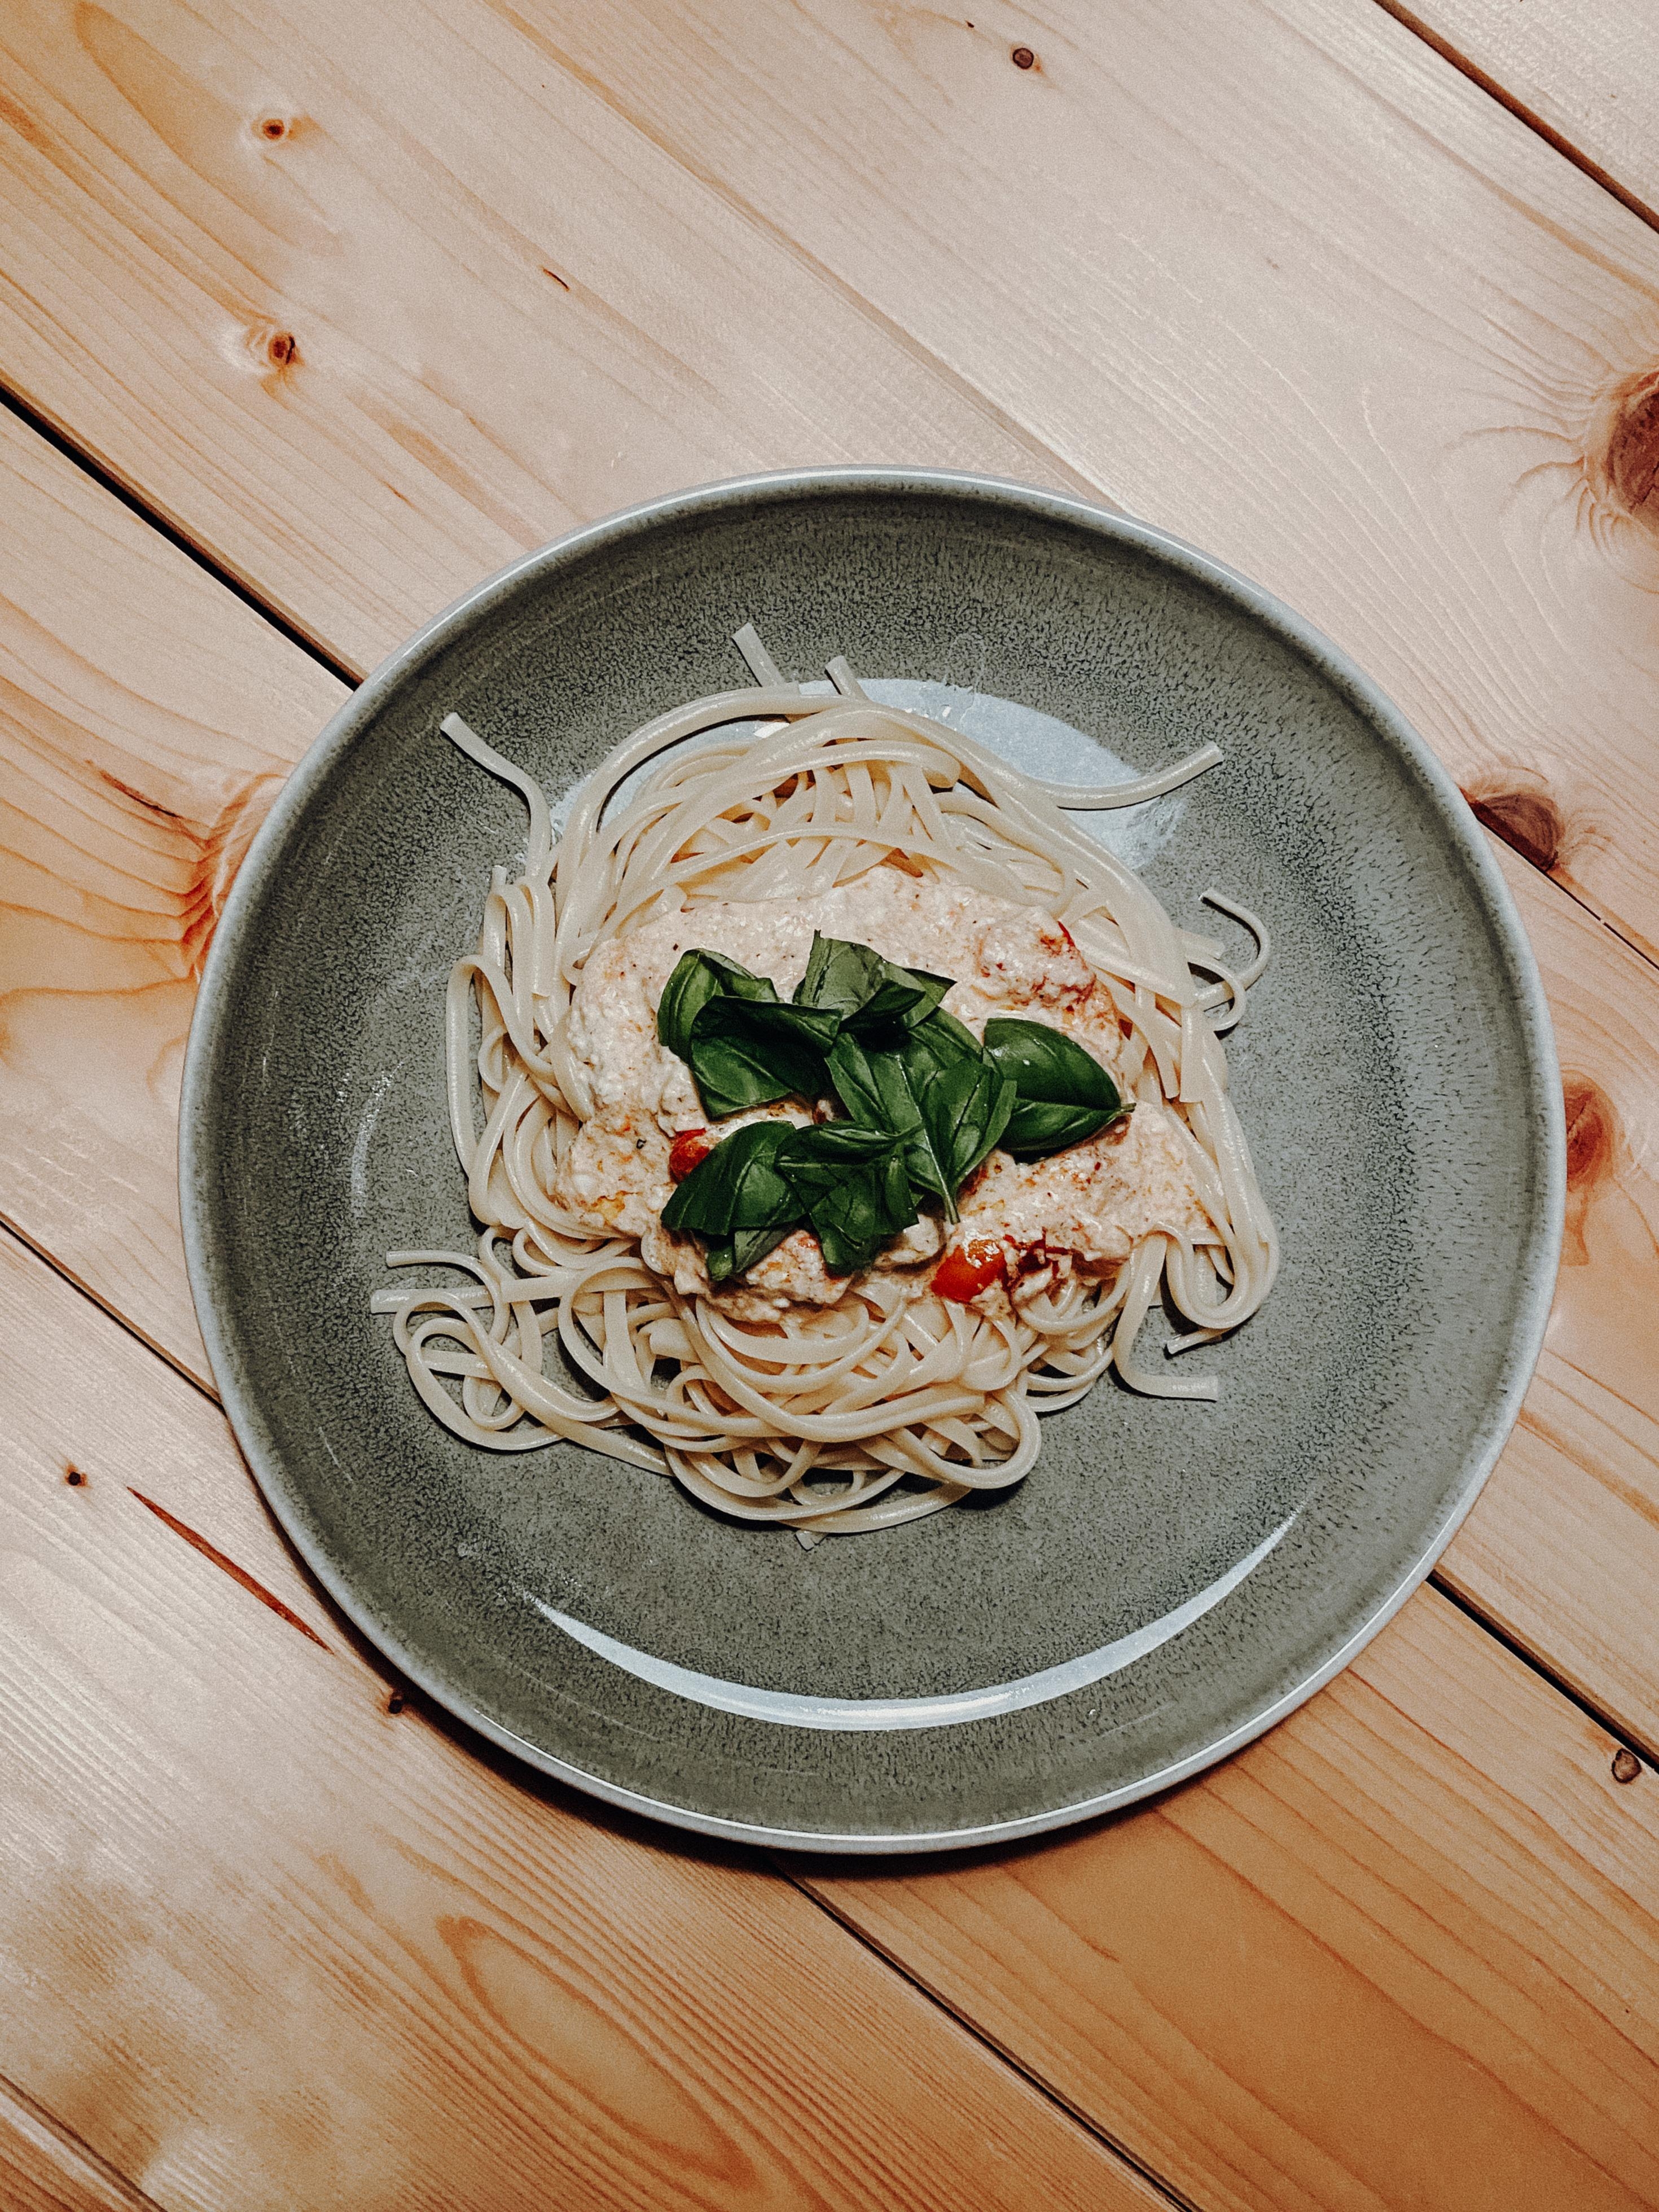 Hab gestern den Instagram-Foodtrend #fetapasta ausprobiert. Schmeckt himmlisch! #veggie #foodchallenge #pasta #linguine